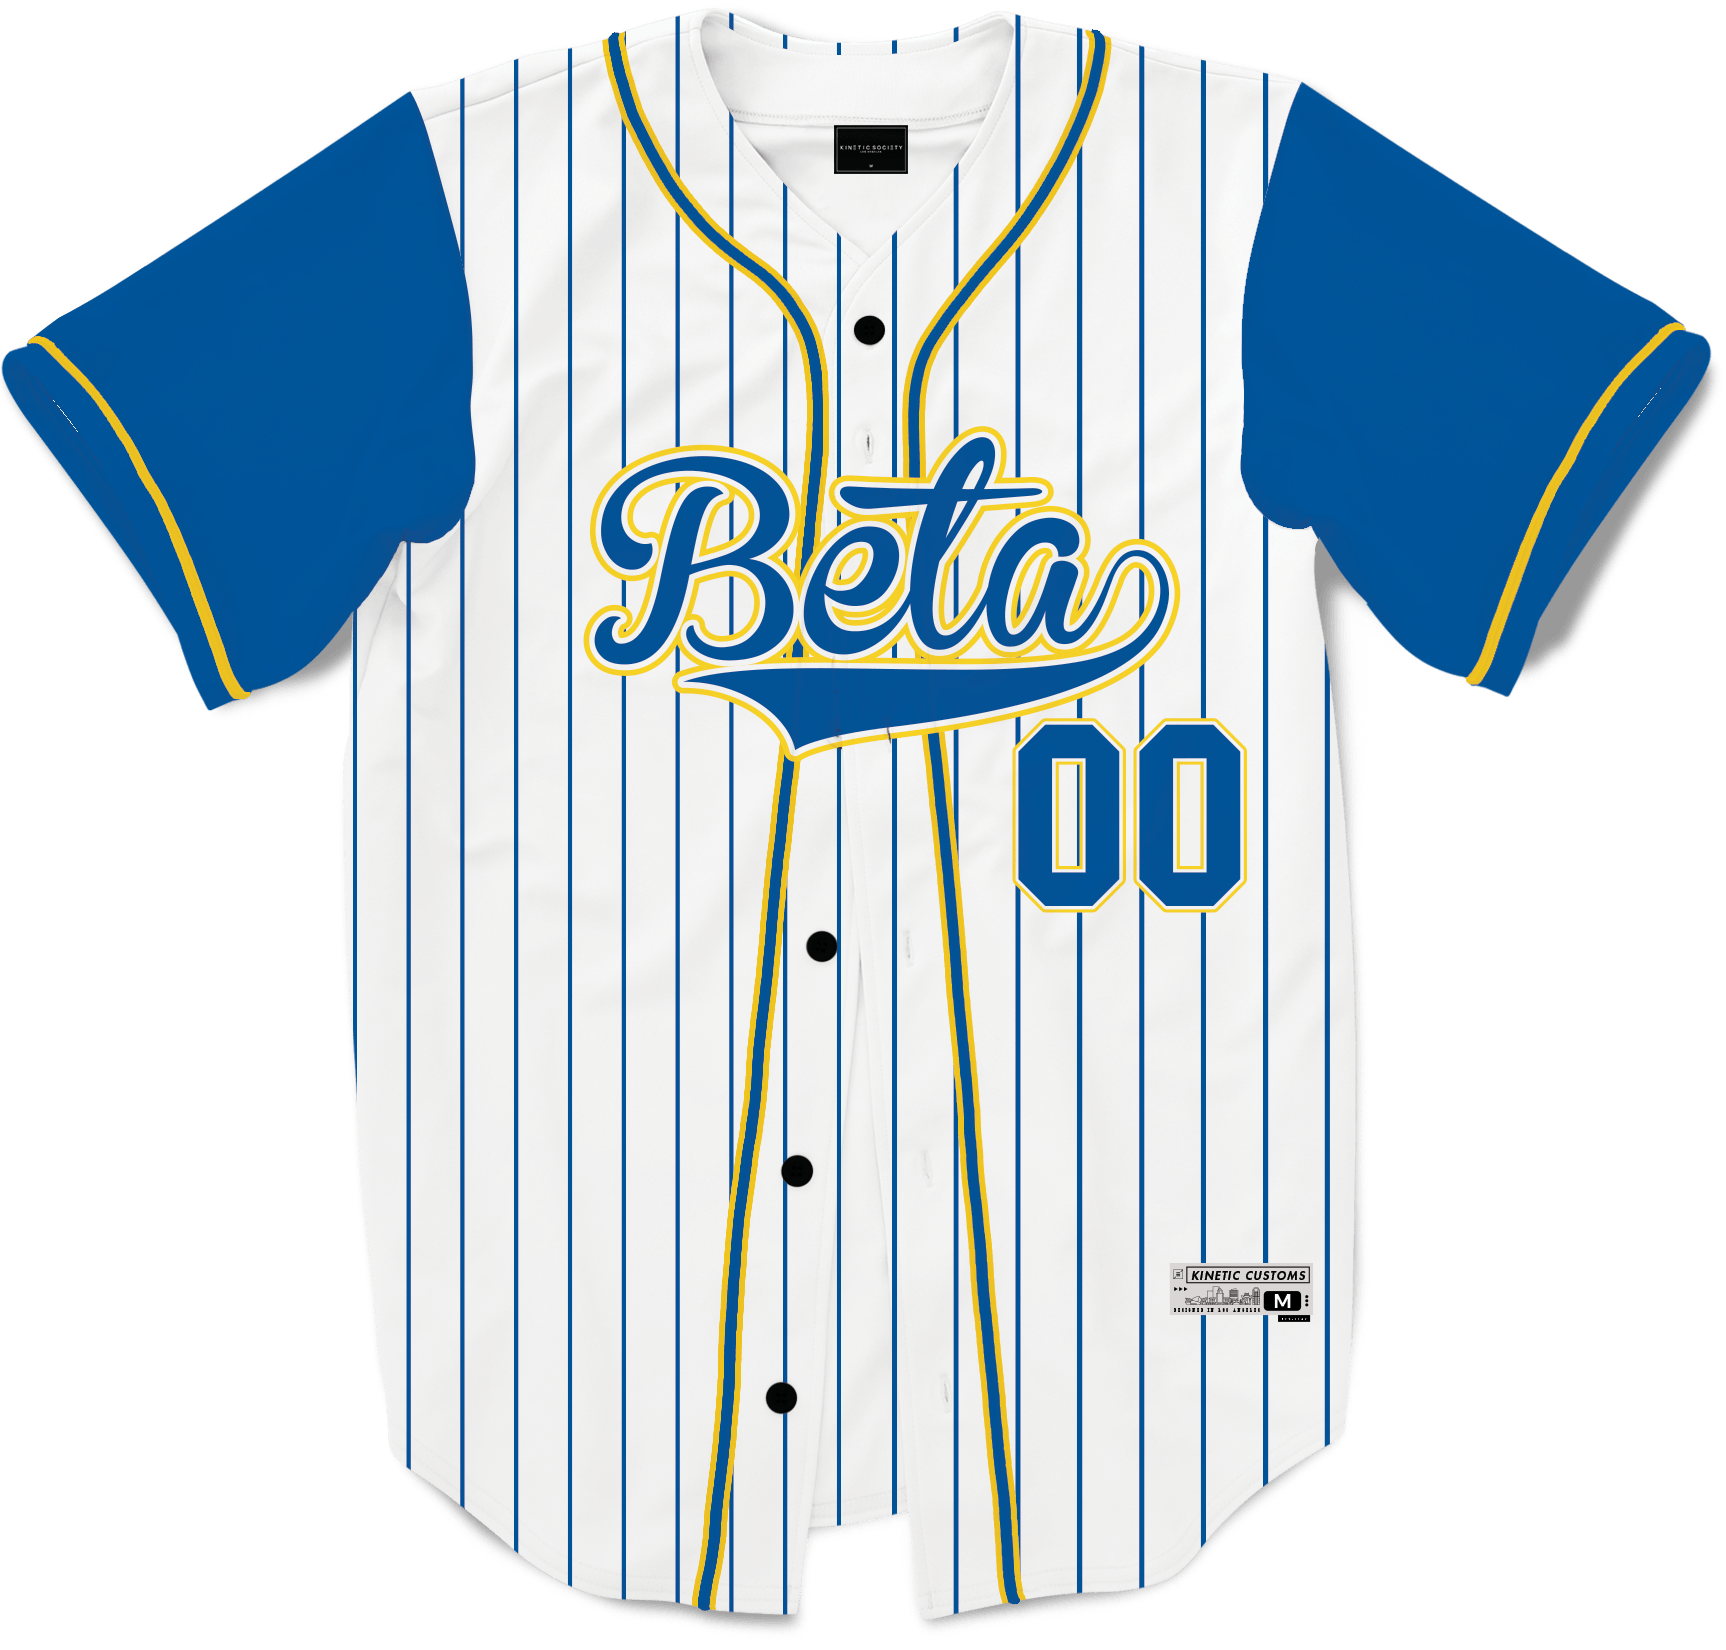 Beta Theta Pi - House Baseball Jersey - Kinetic Society